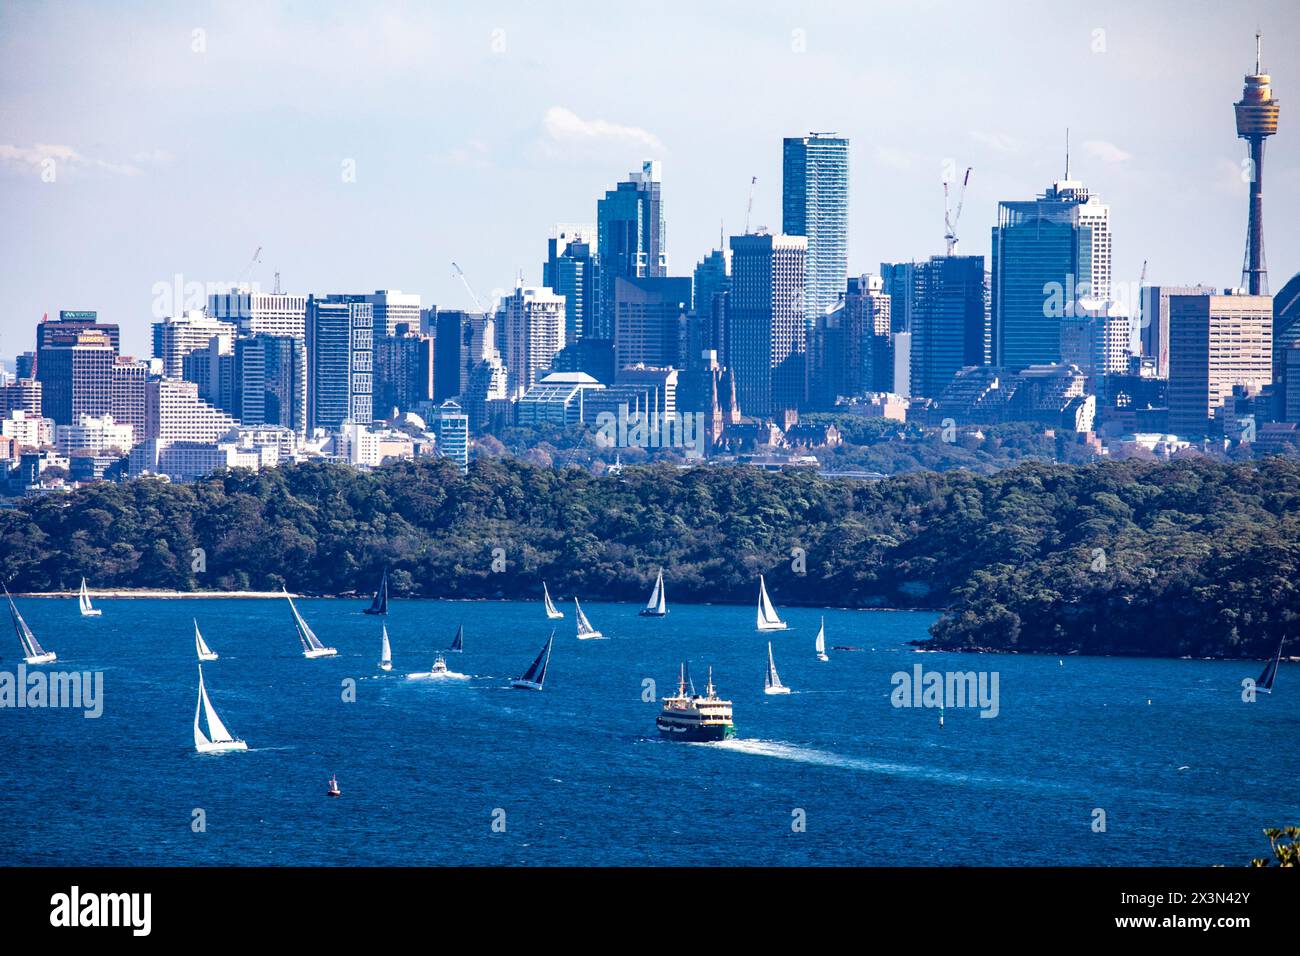 Lo skyline e il paesaggio urbano del centro di Sydney sono visti da North Head Manly, attraverso il porto di Sydney e Sydney Head, NSW, Australia Foto Stock